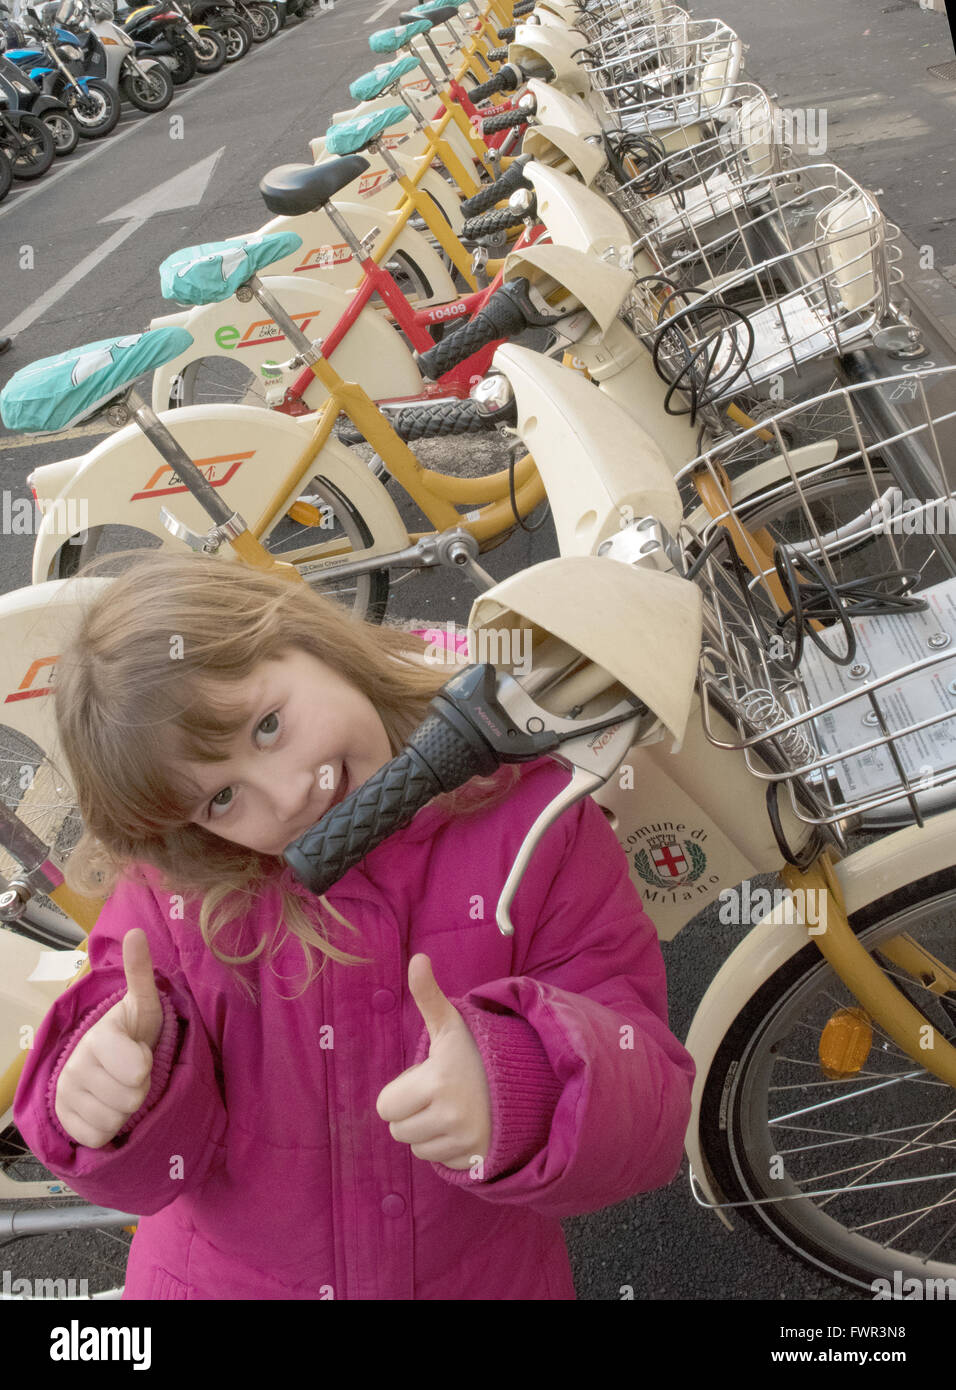 Alamy, actividad, Milán, bicicletas, alquiler de bicicleta, bicicleta, romper, capital de Italia, la ciudad rosa, conformidad, ciclo, dedos hacia arriba, feliz Foto de stock